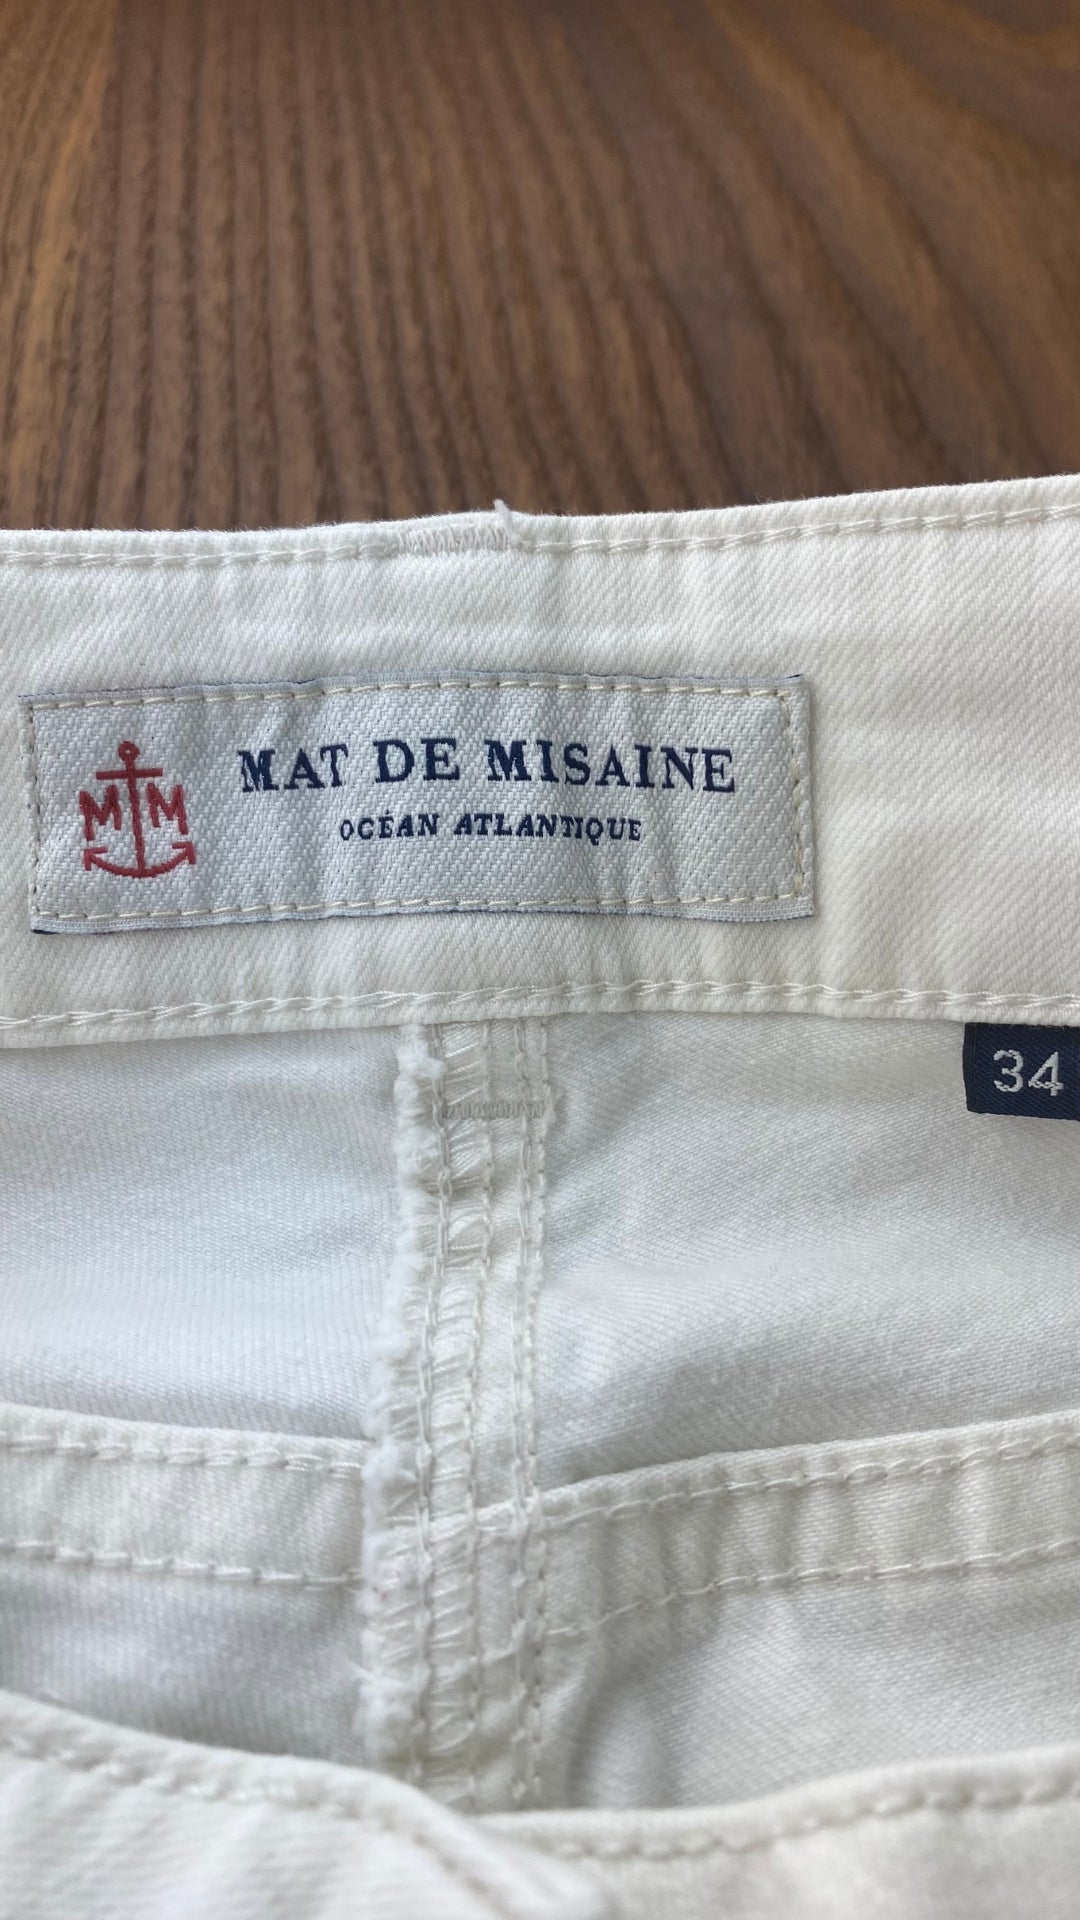 Pantalon crème à jambe droite poches plaquées, Mat de Misaine, taille 34 (xs). Vue de l'étiquette marque et taille.